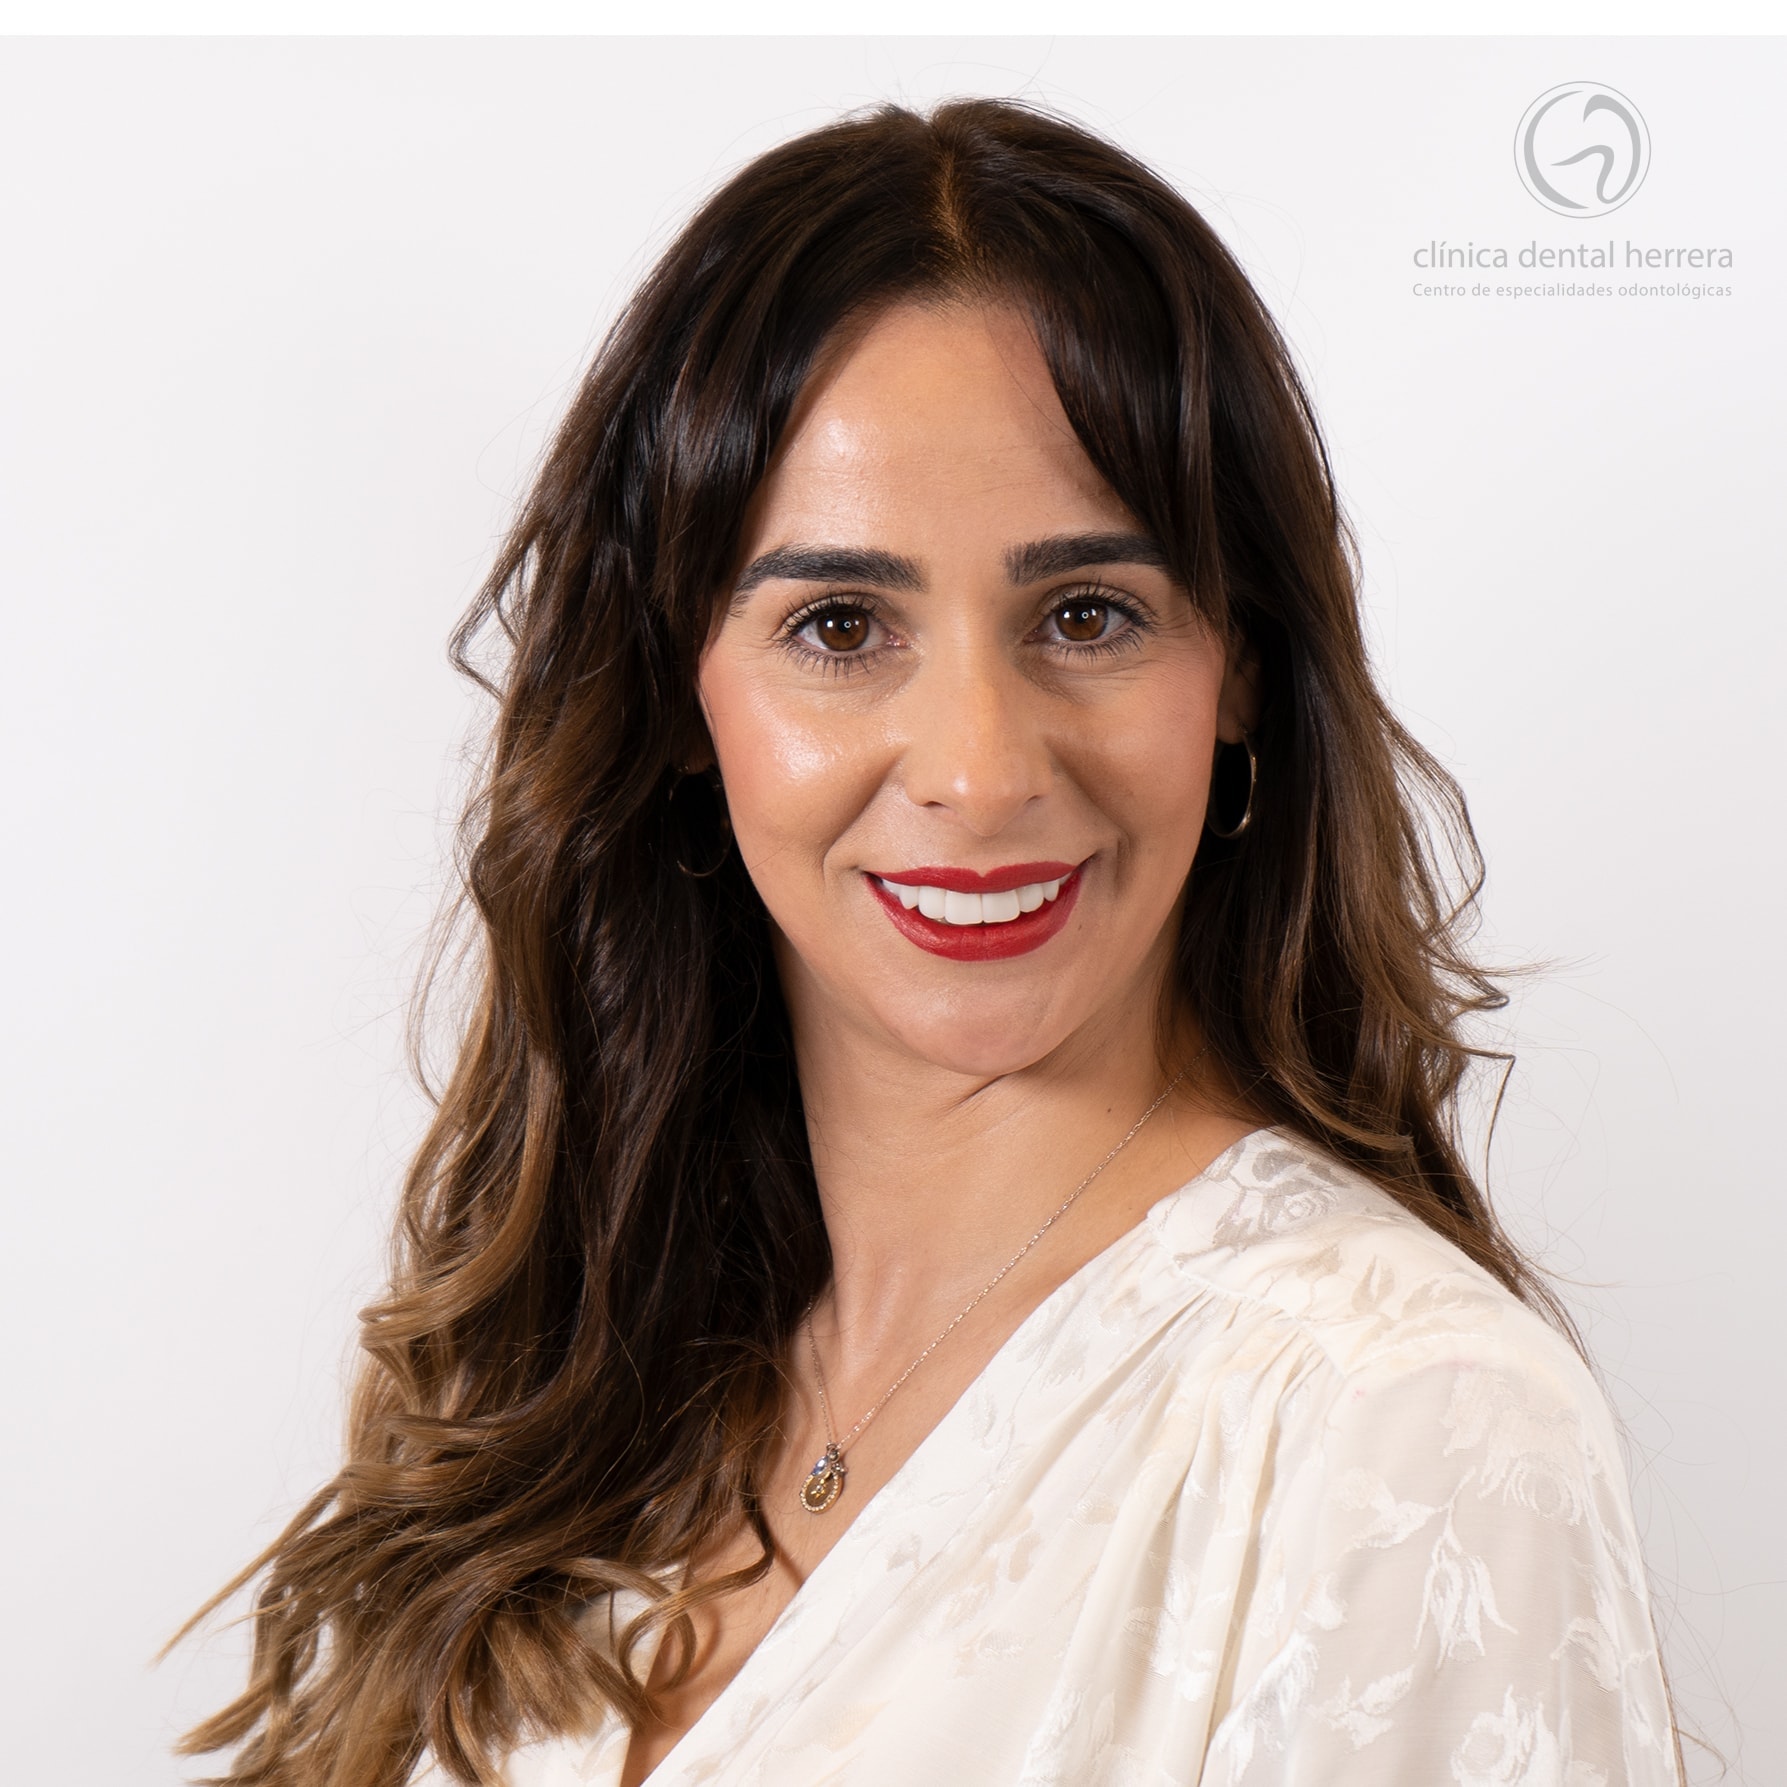 María Molina. Ortodoncia, Implantes y Carillas dentales 29